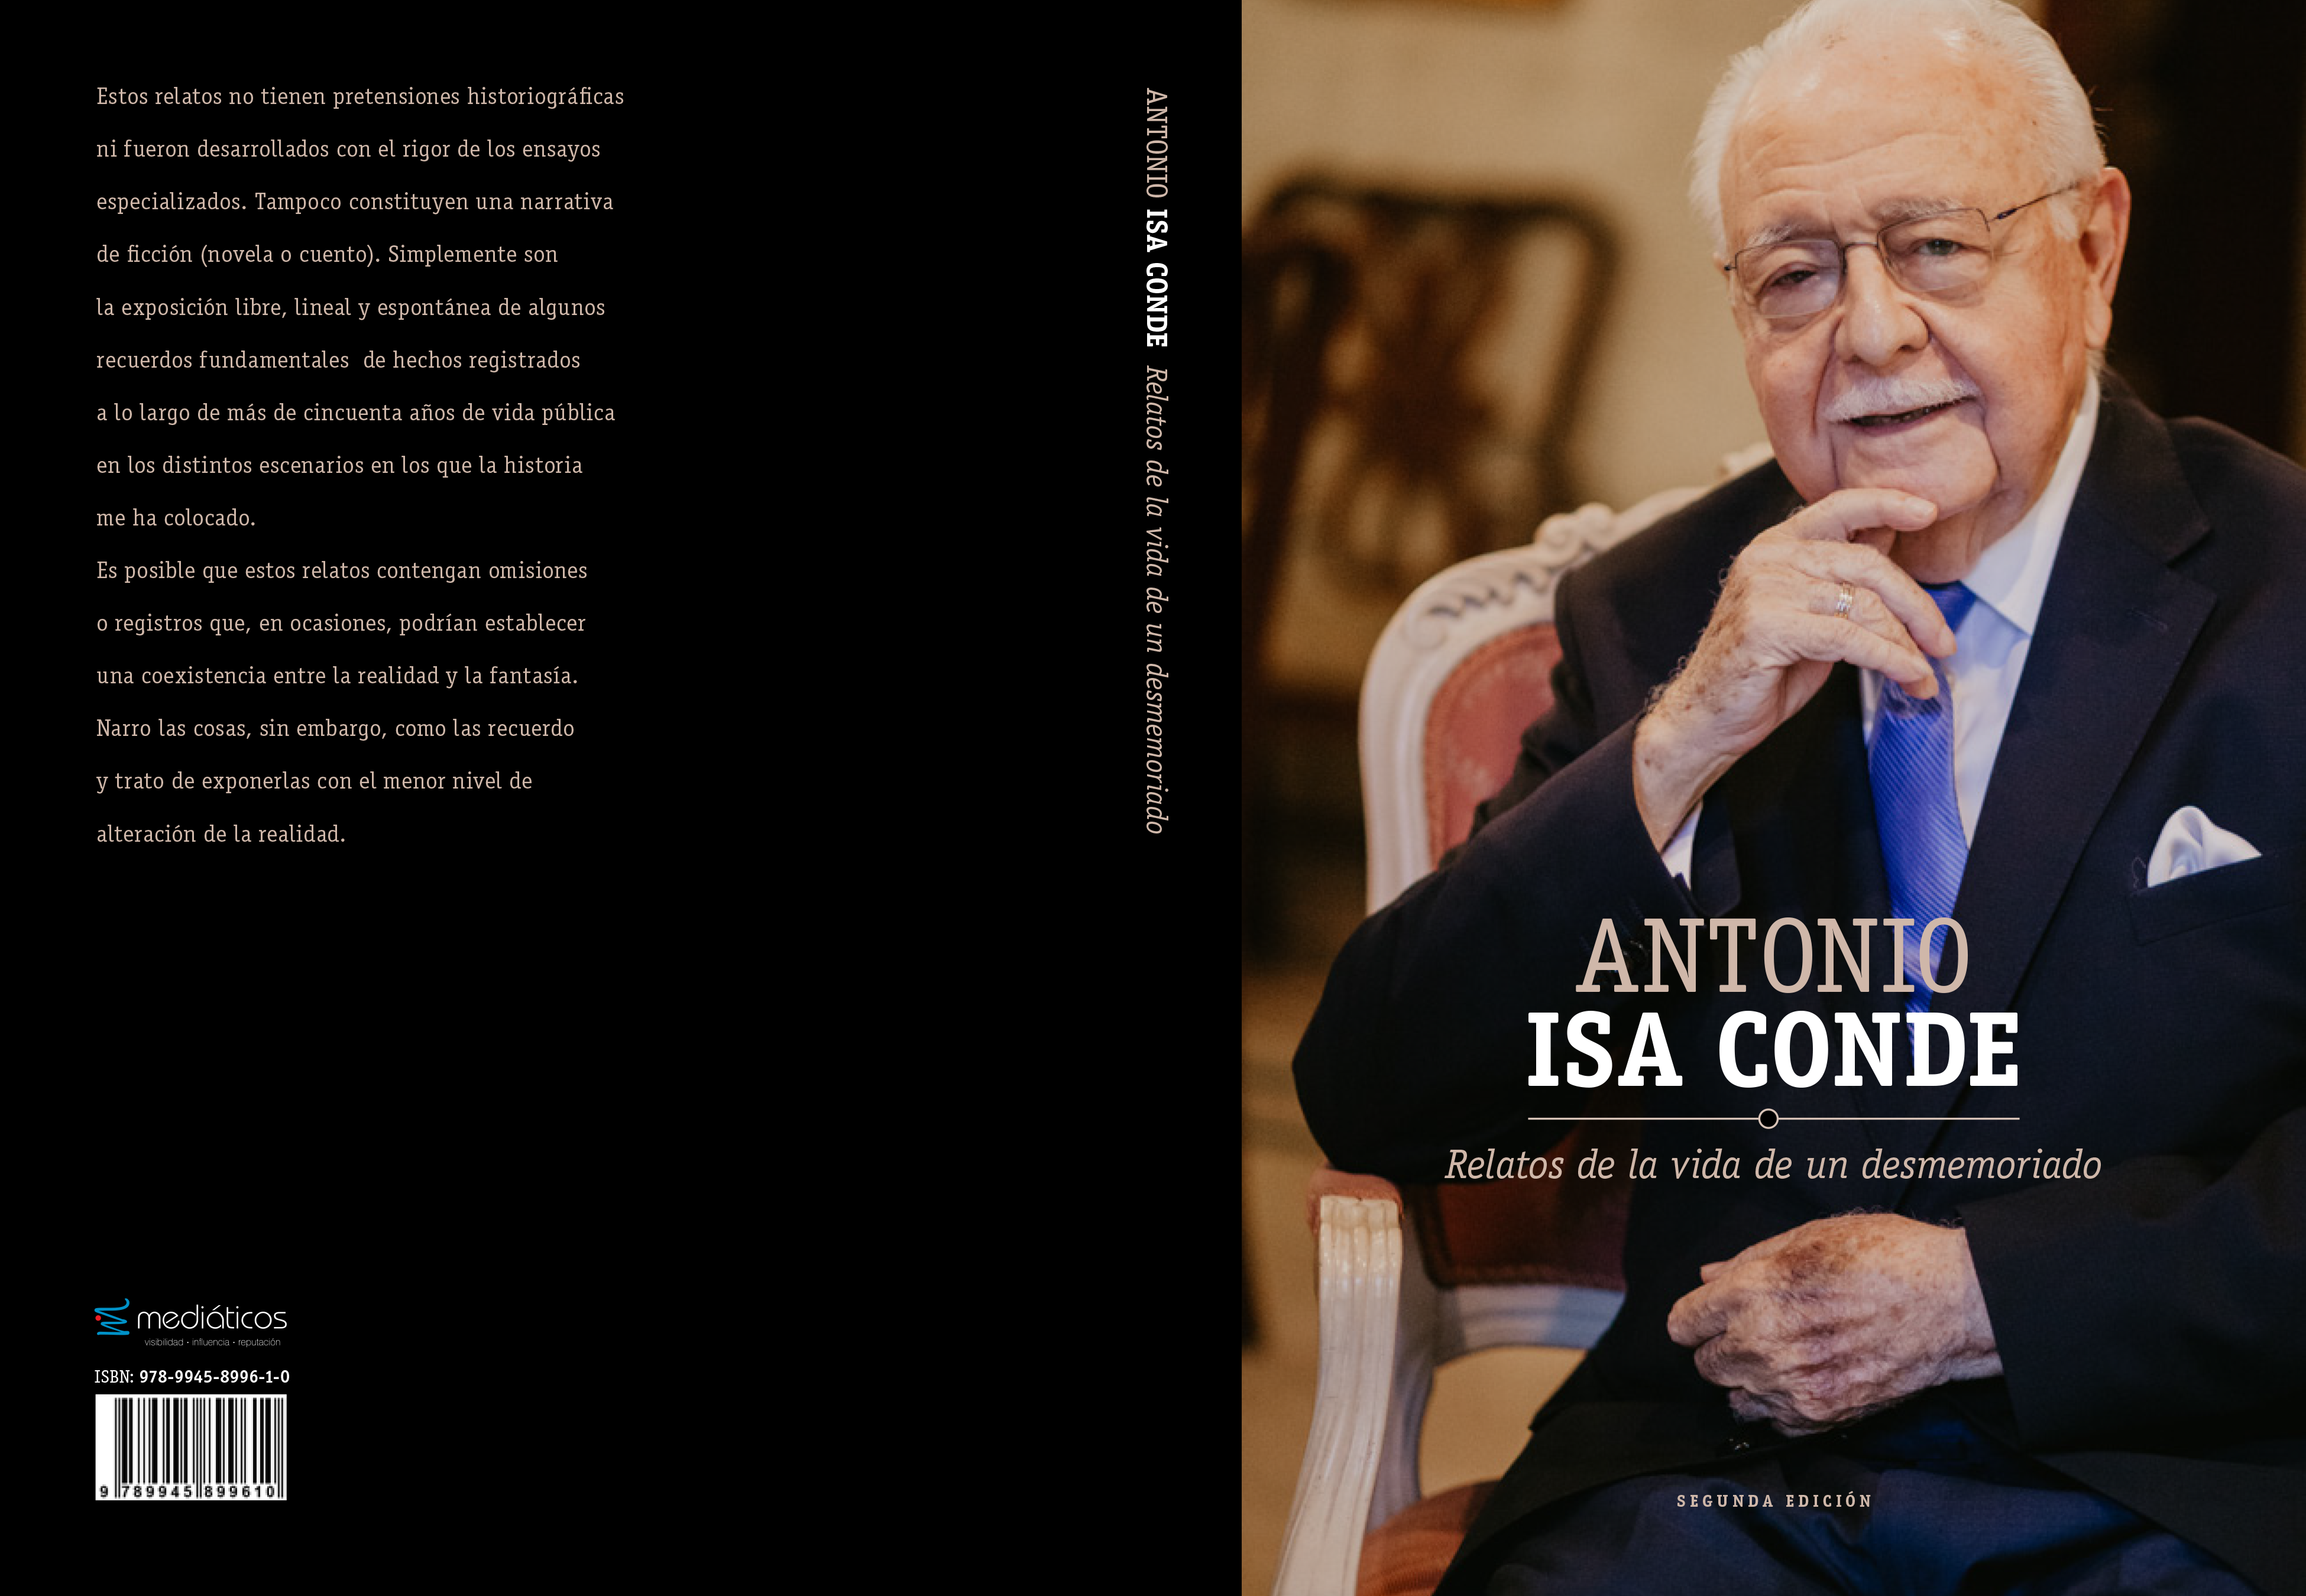 Relatos de la vida de un desmemoriado, autobiografía de Isa Conde